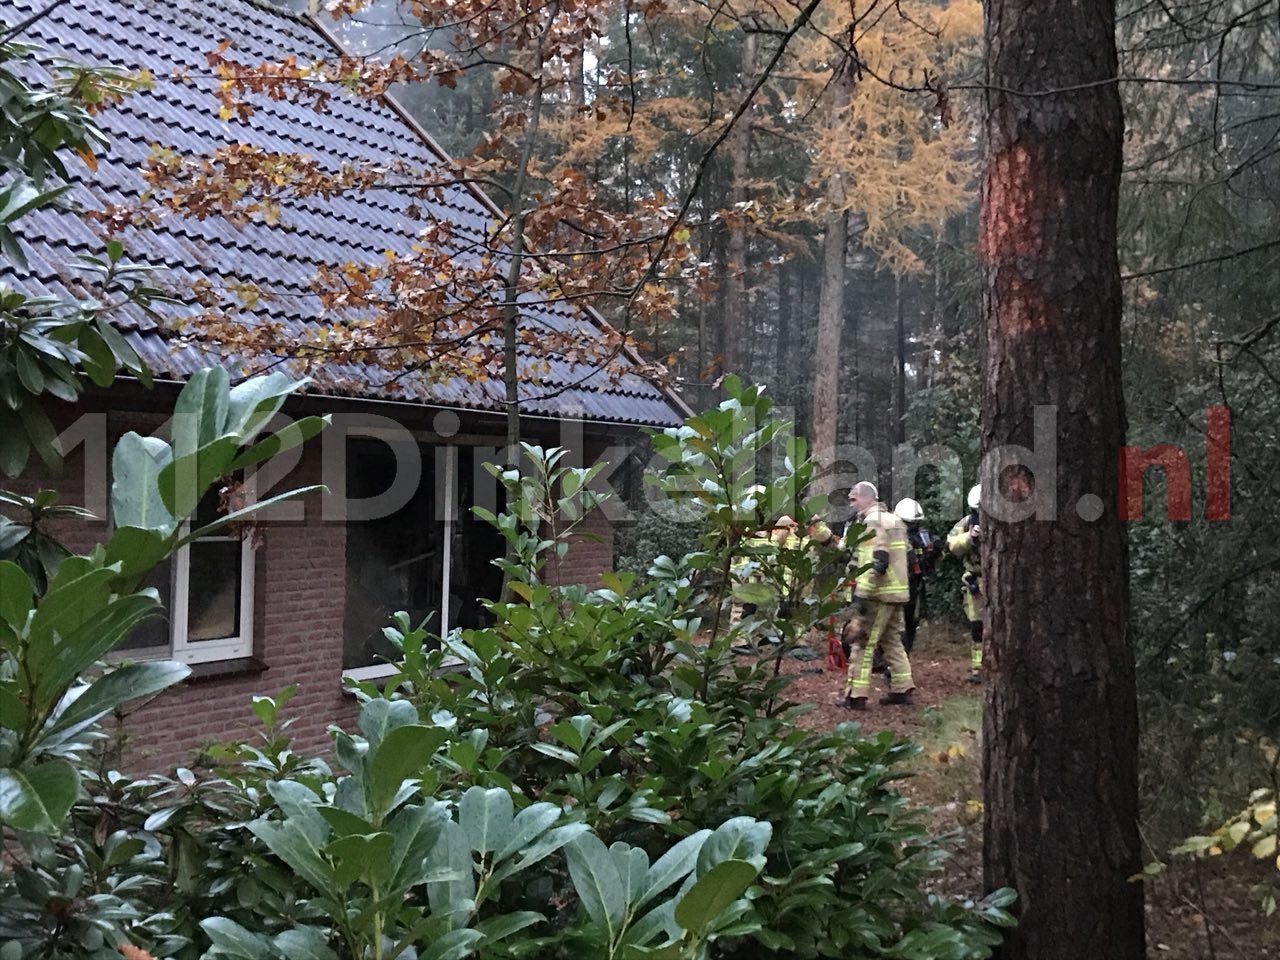 Taakstraf voor vrouw na veroorzaken brand in vakantiewoning in Deurningen